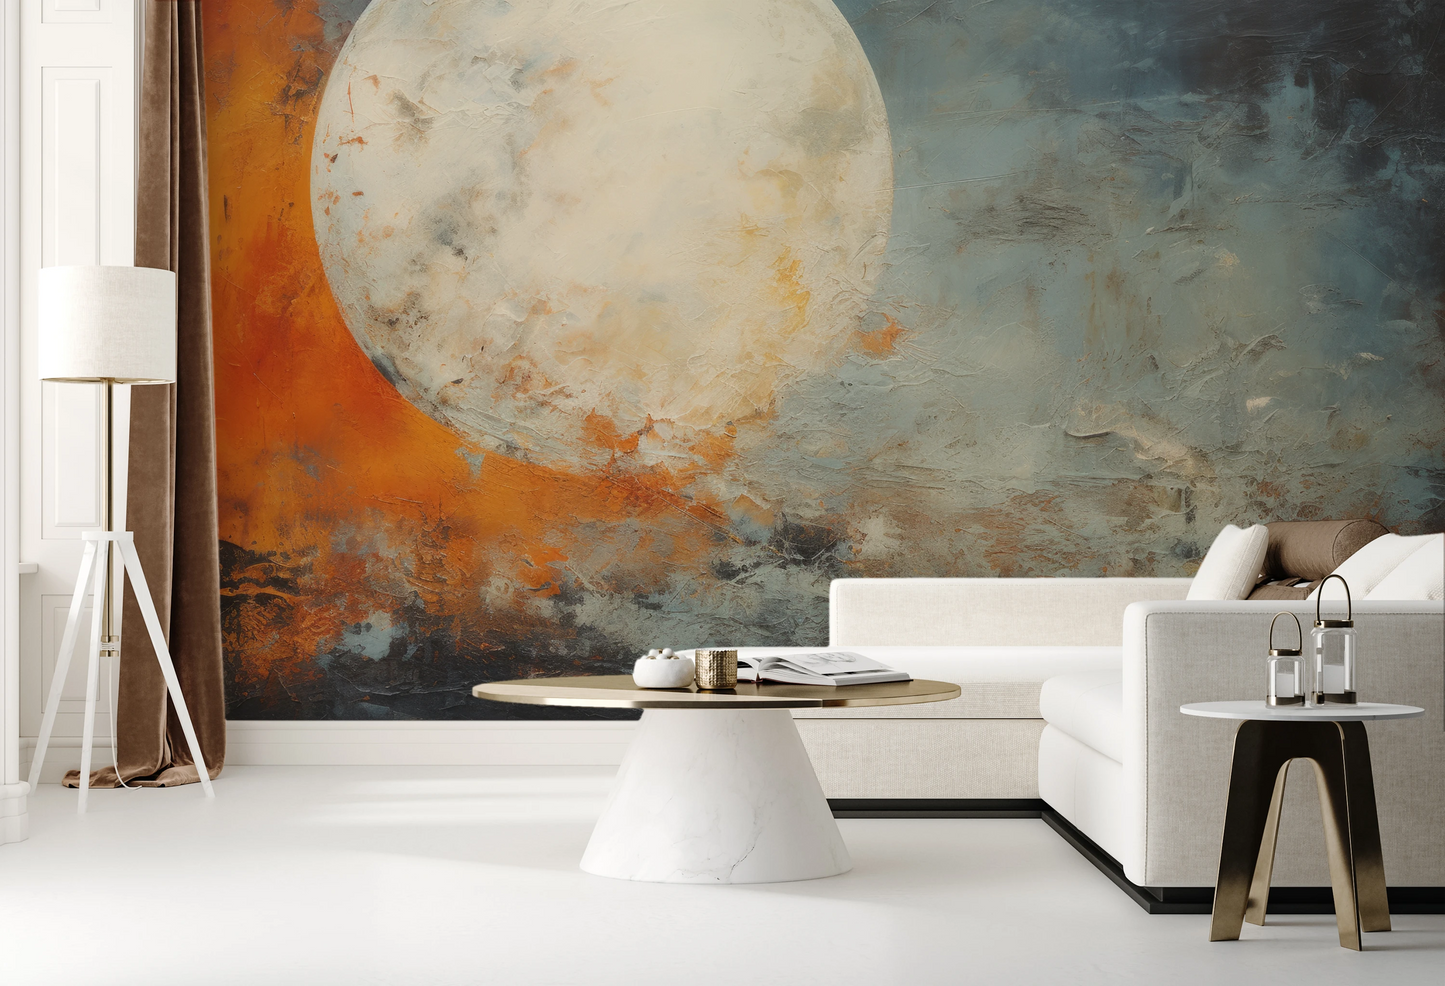 Fototapeta artystyczna o nazwie Moon's Texture pokazana w aranżacji wnętrza.